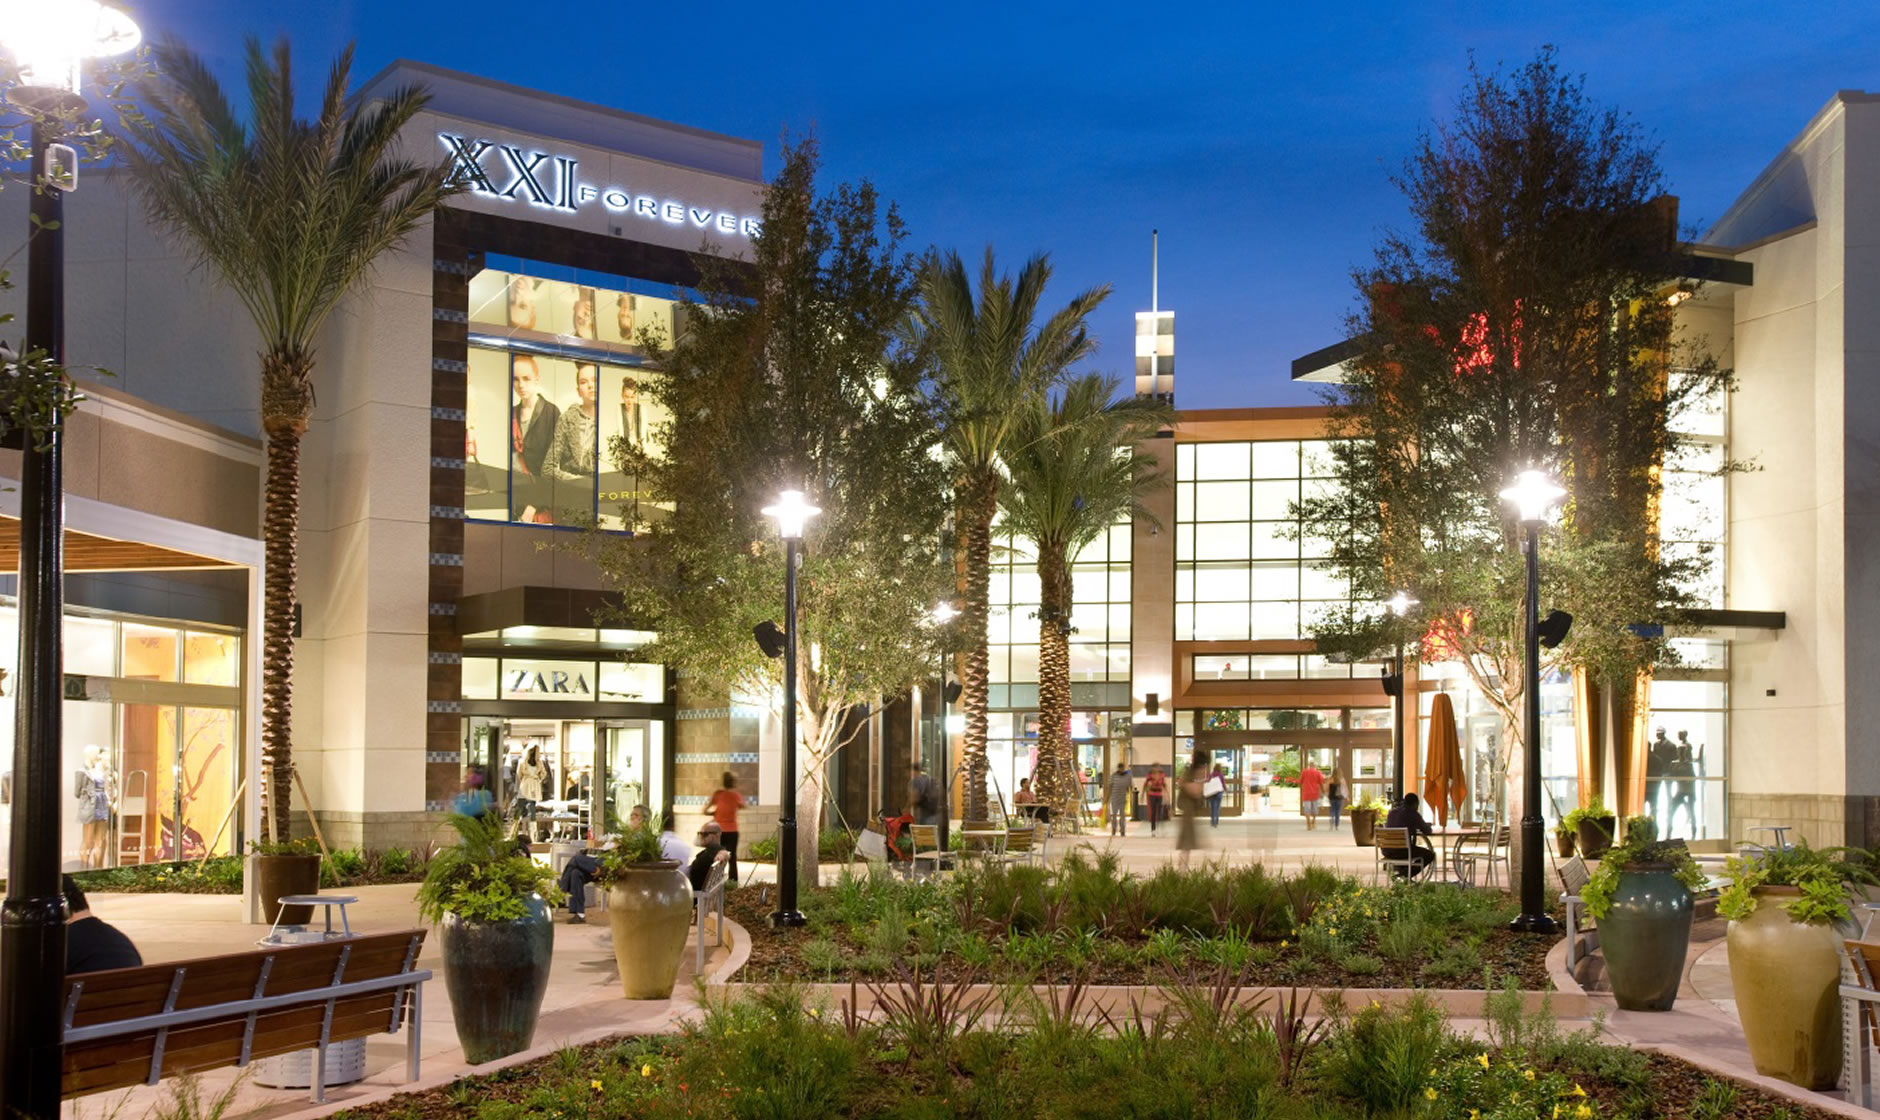 The Florida Mall image